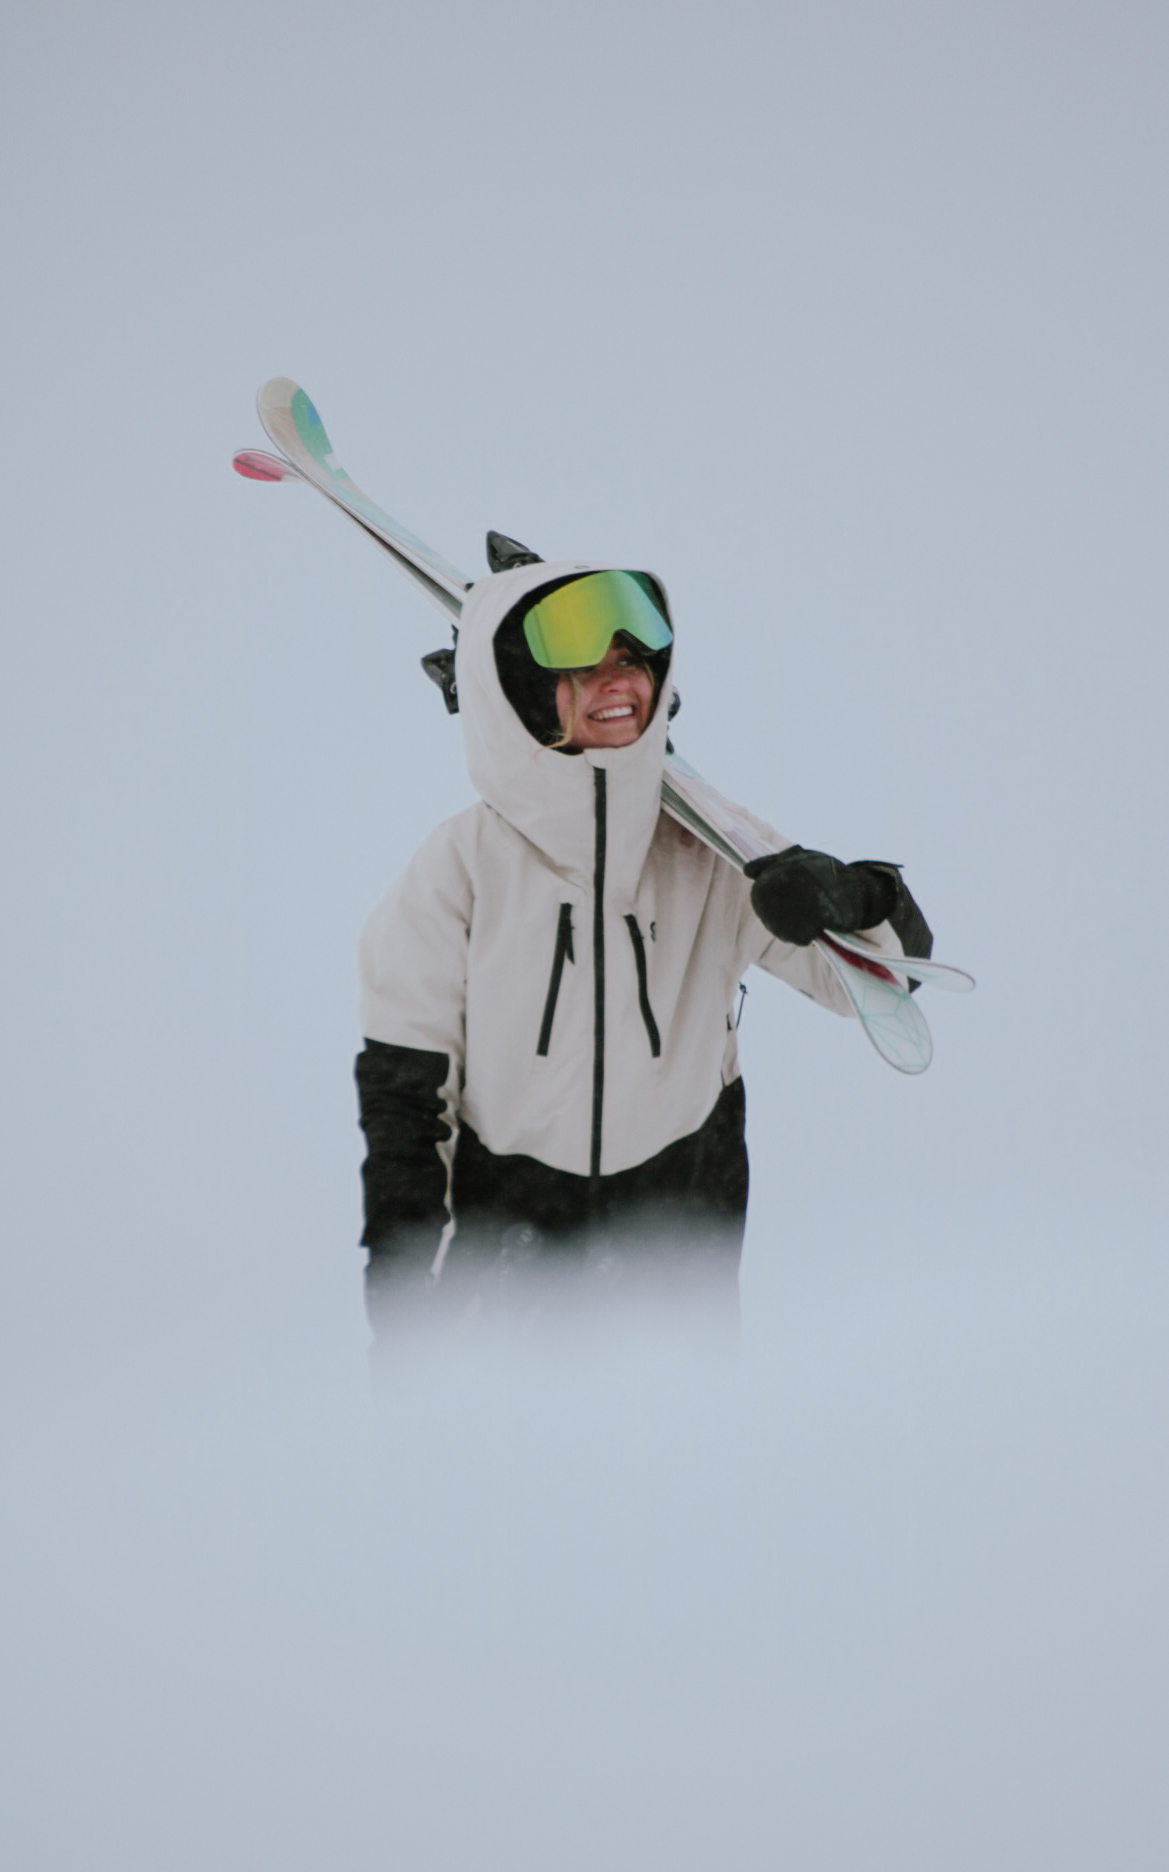 Lynx Ski Jacket Black - Women's - Strobe